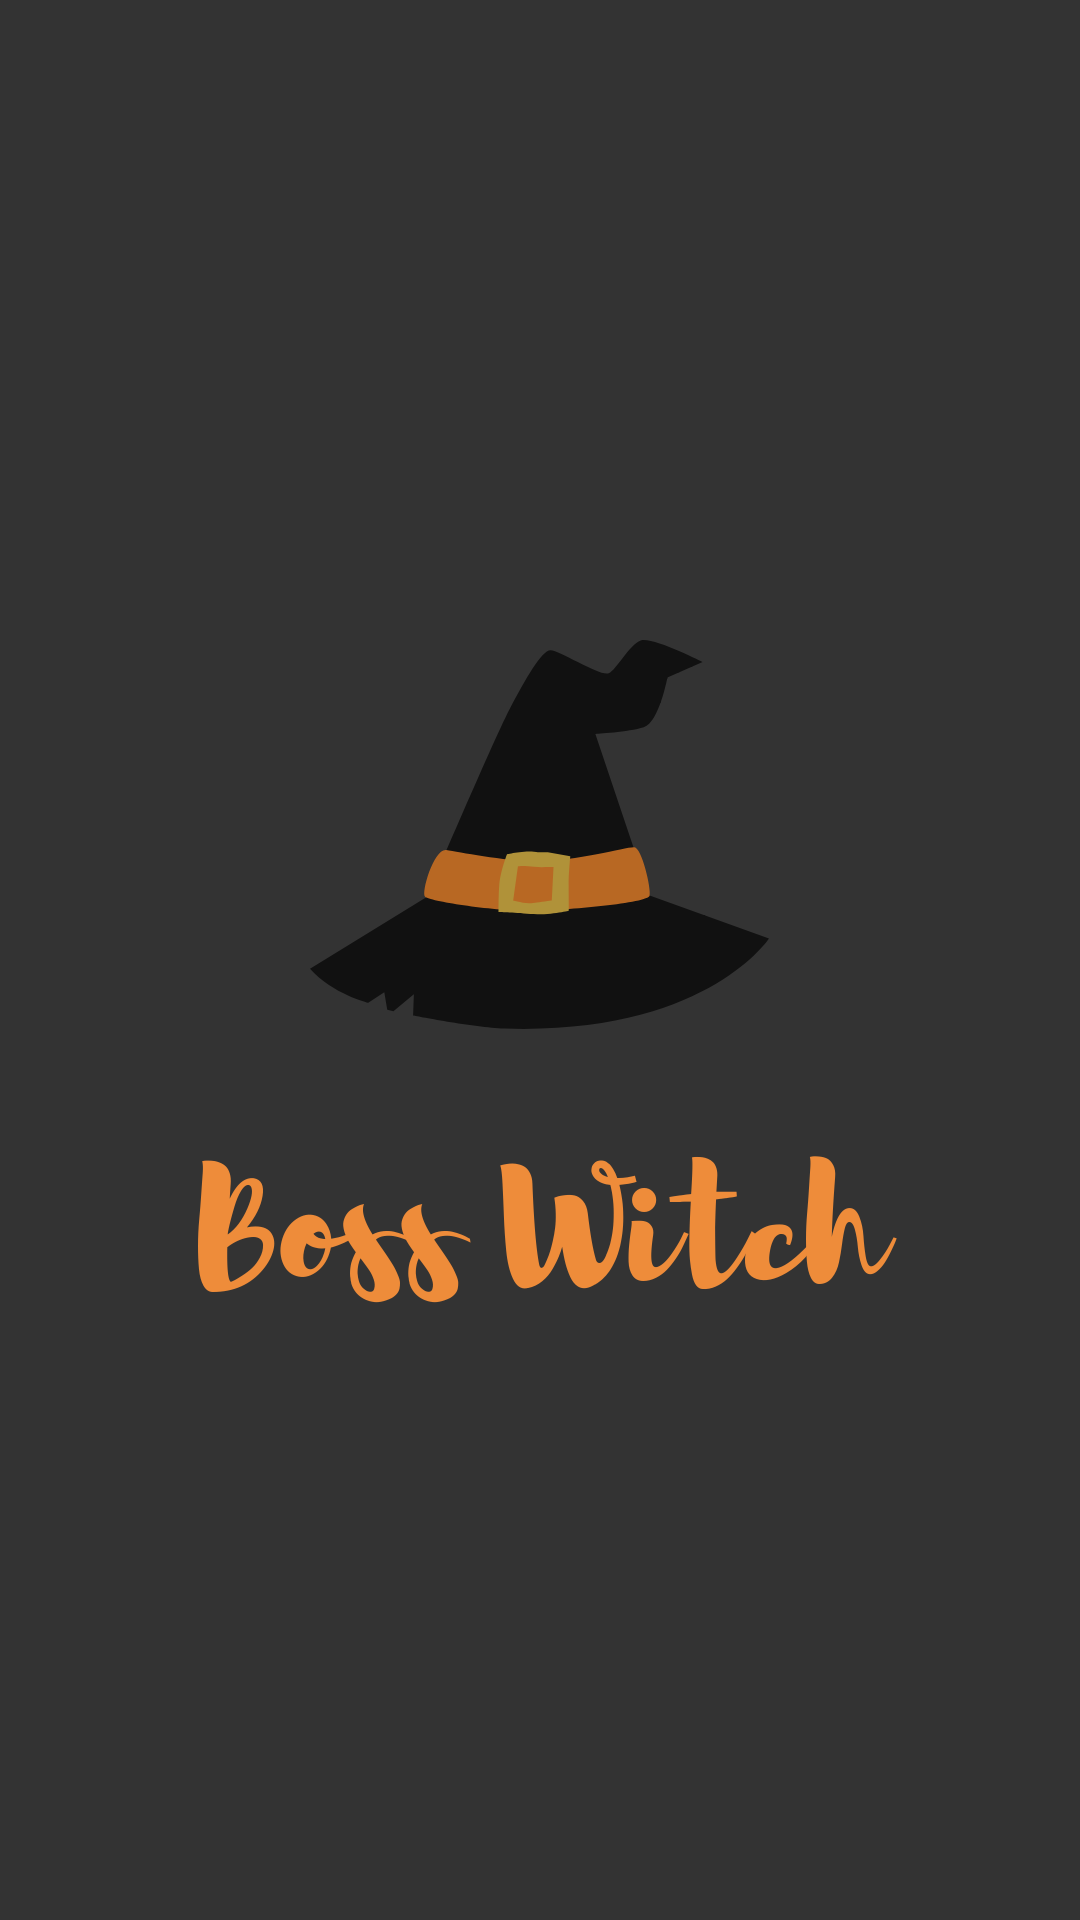 Boss witch wallpaper illustration. Witch wallpaper, Halloween wallpaper, Fall wallpaper